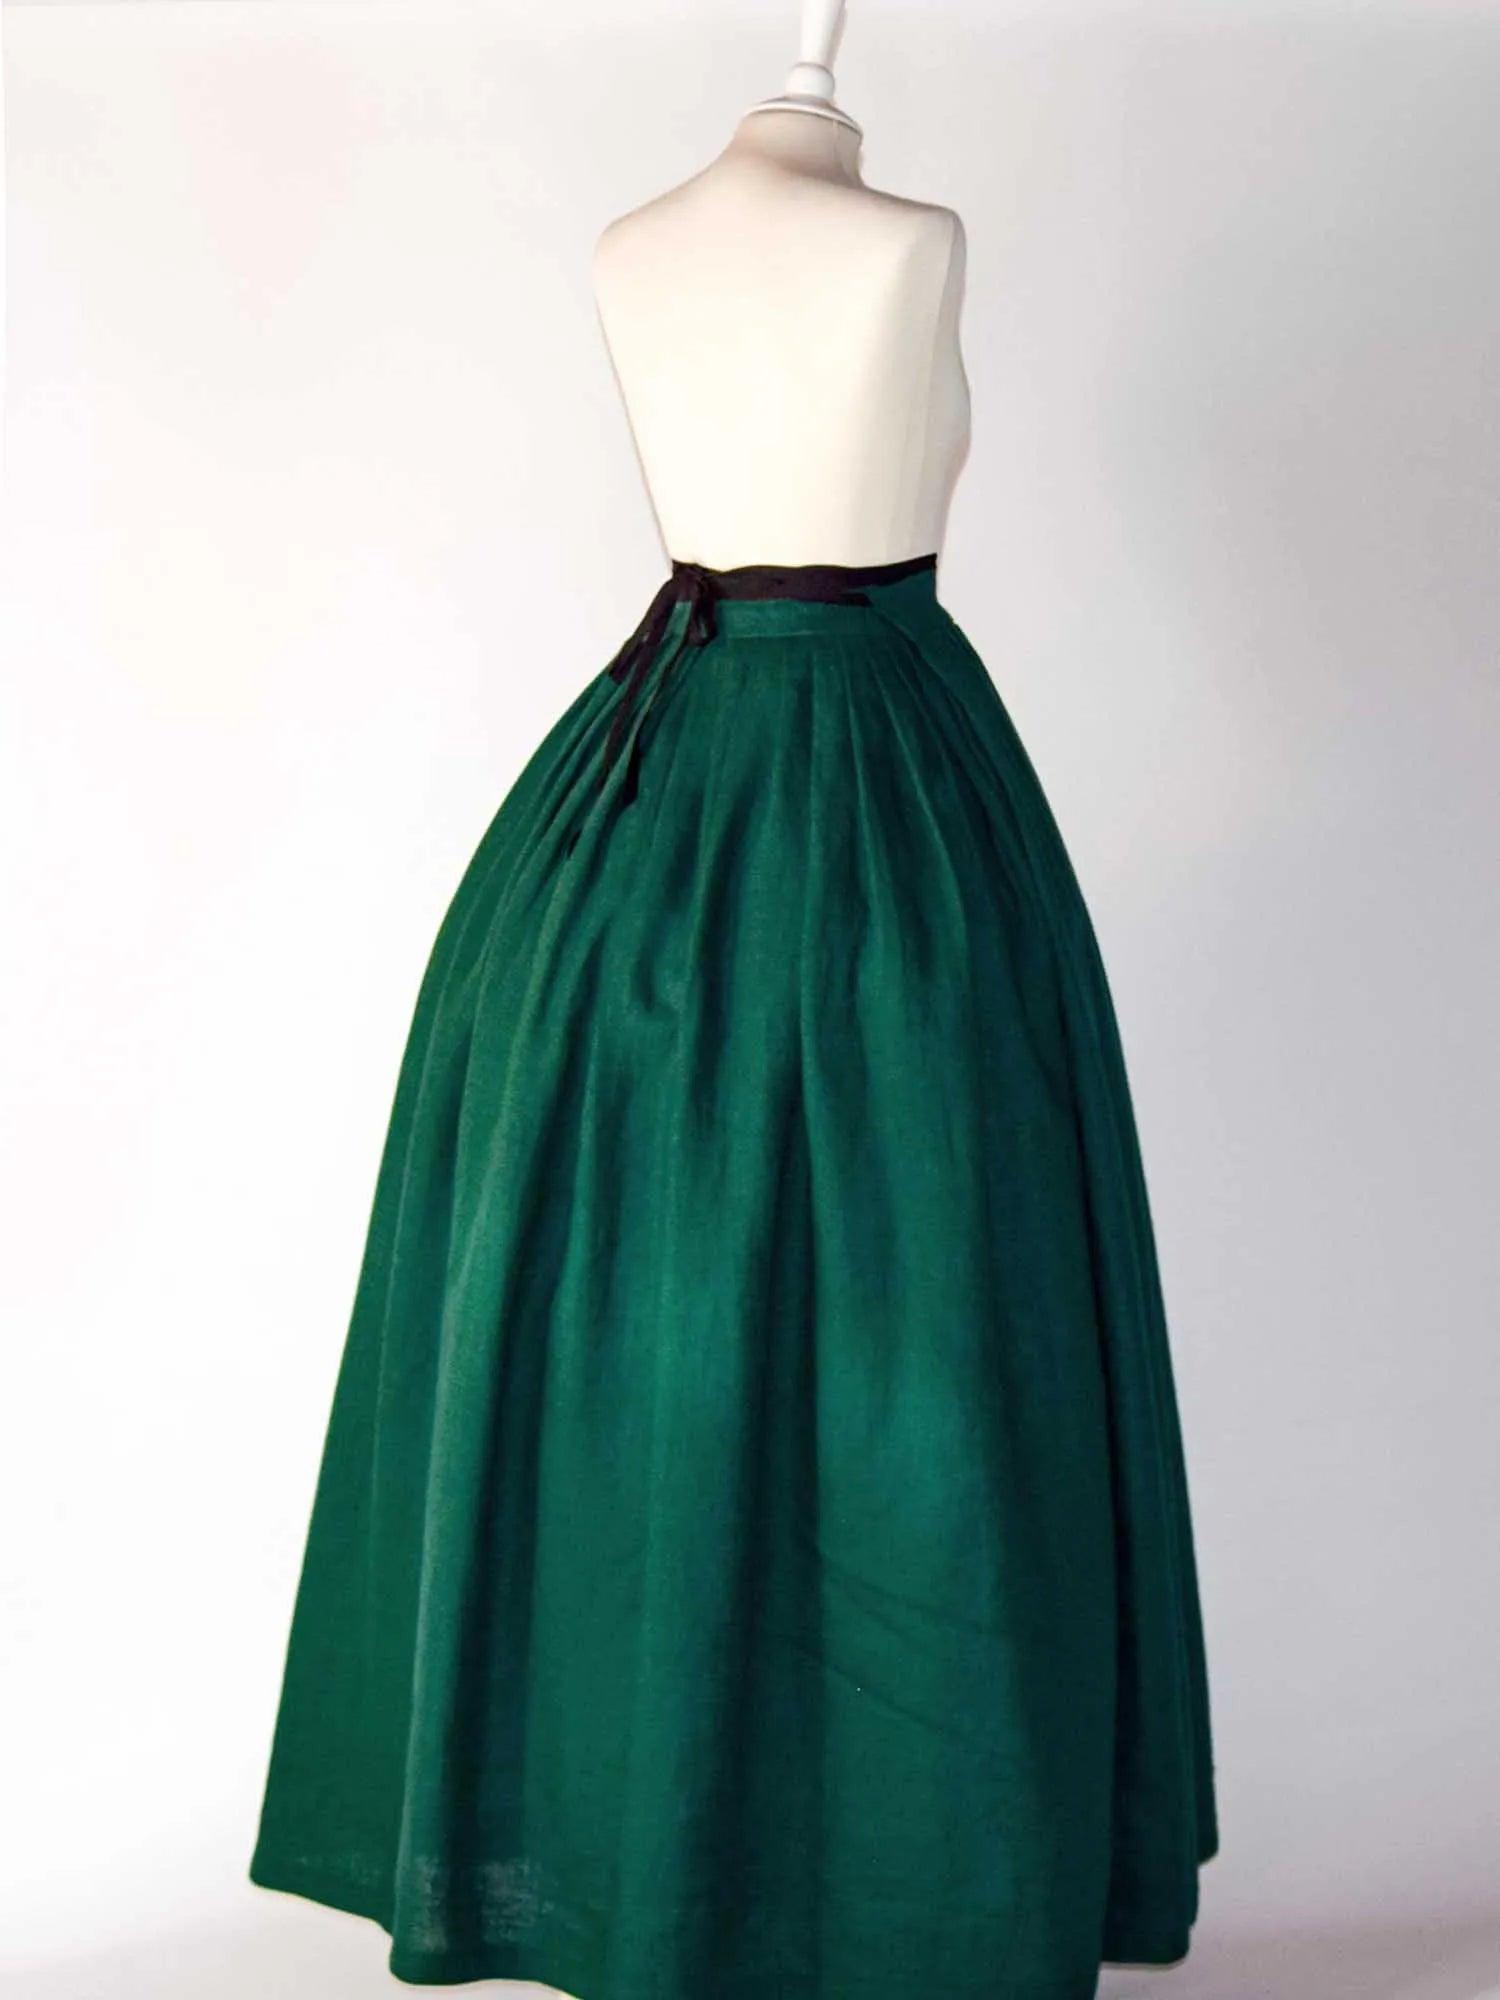 HELOISE, Historical Skirt in Dark Green Linen - Atelier Serraspina